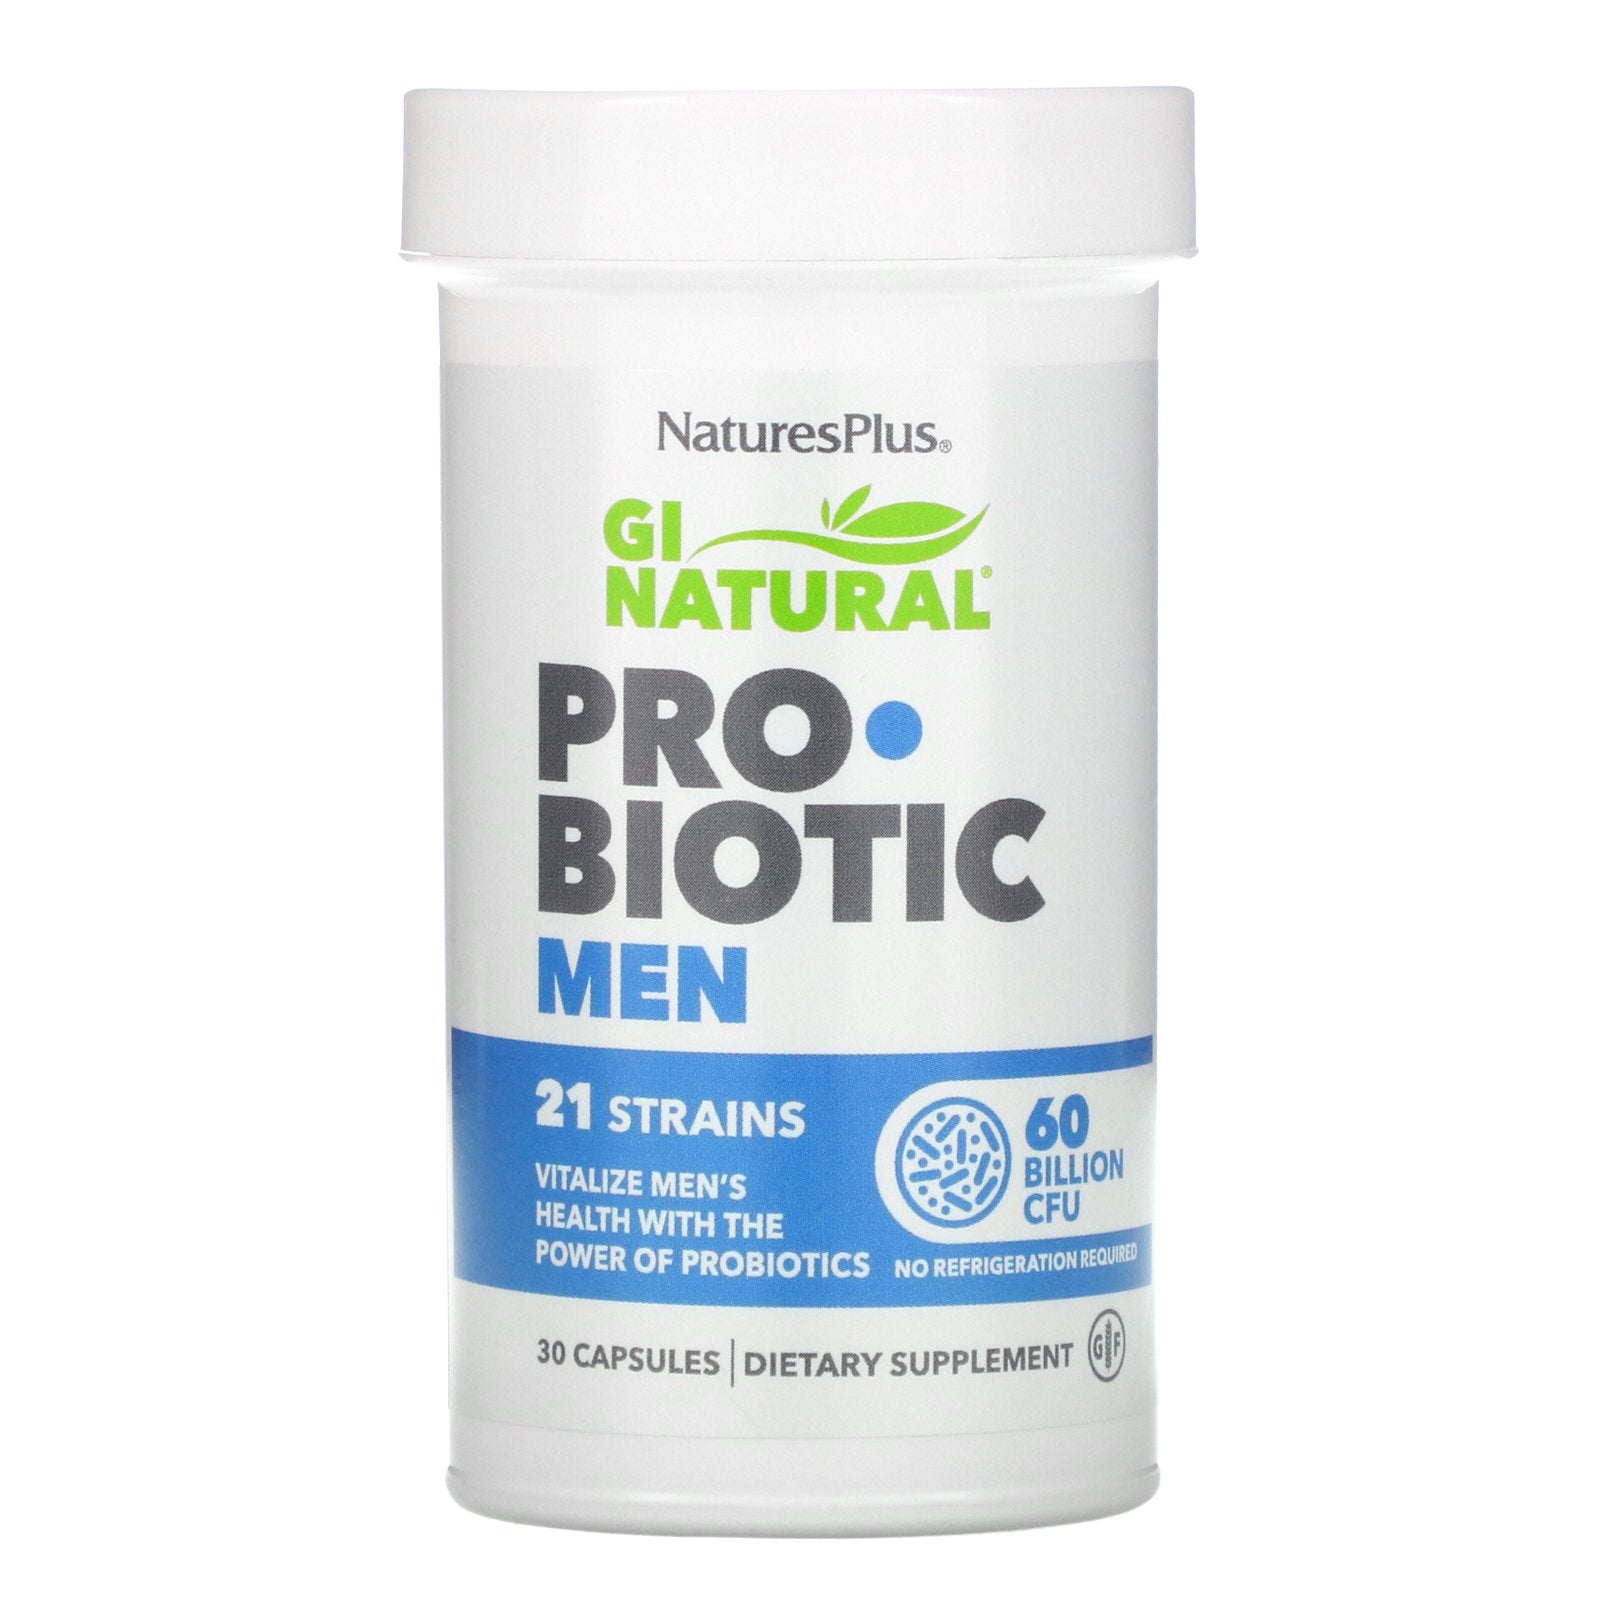 Nature's Plus GI Nutra Probiotic Men 30 Capsules